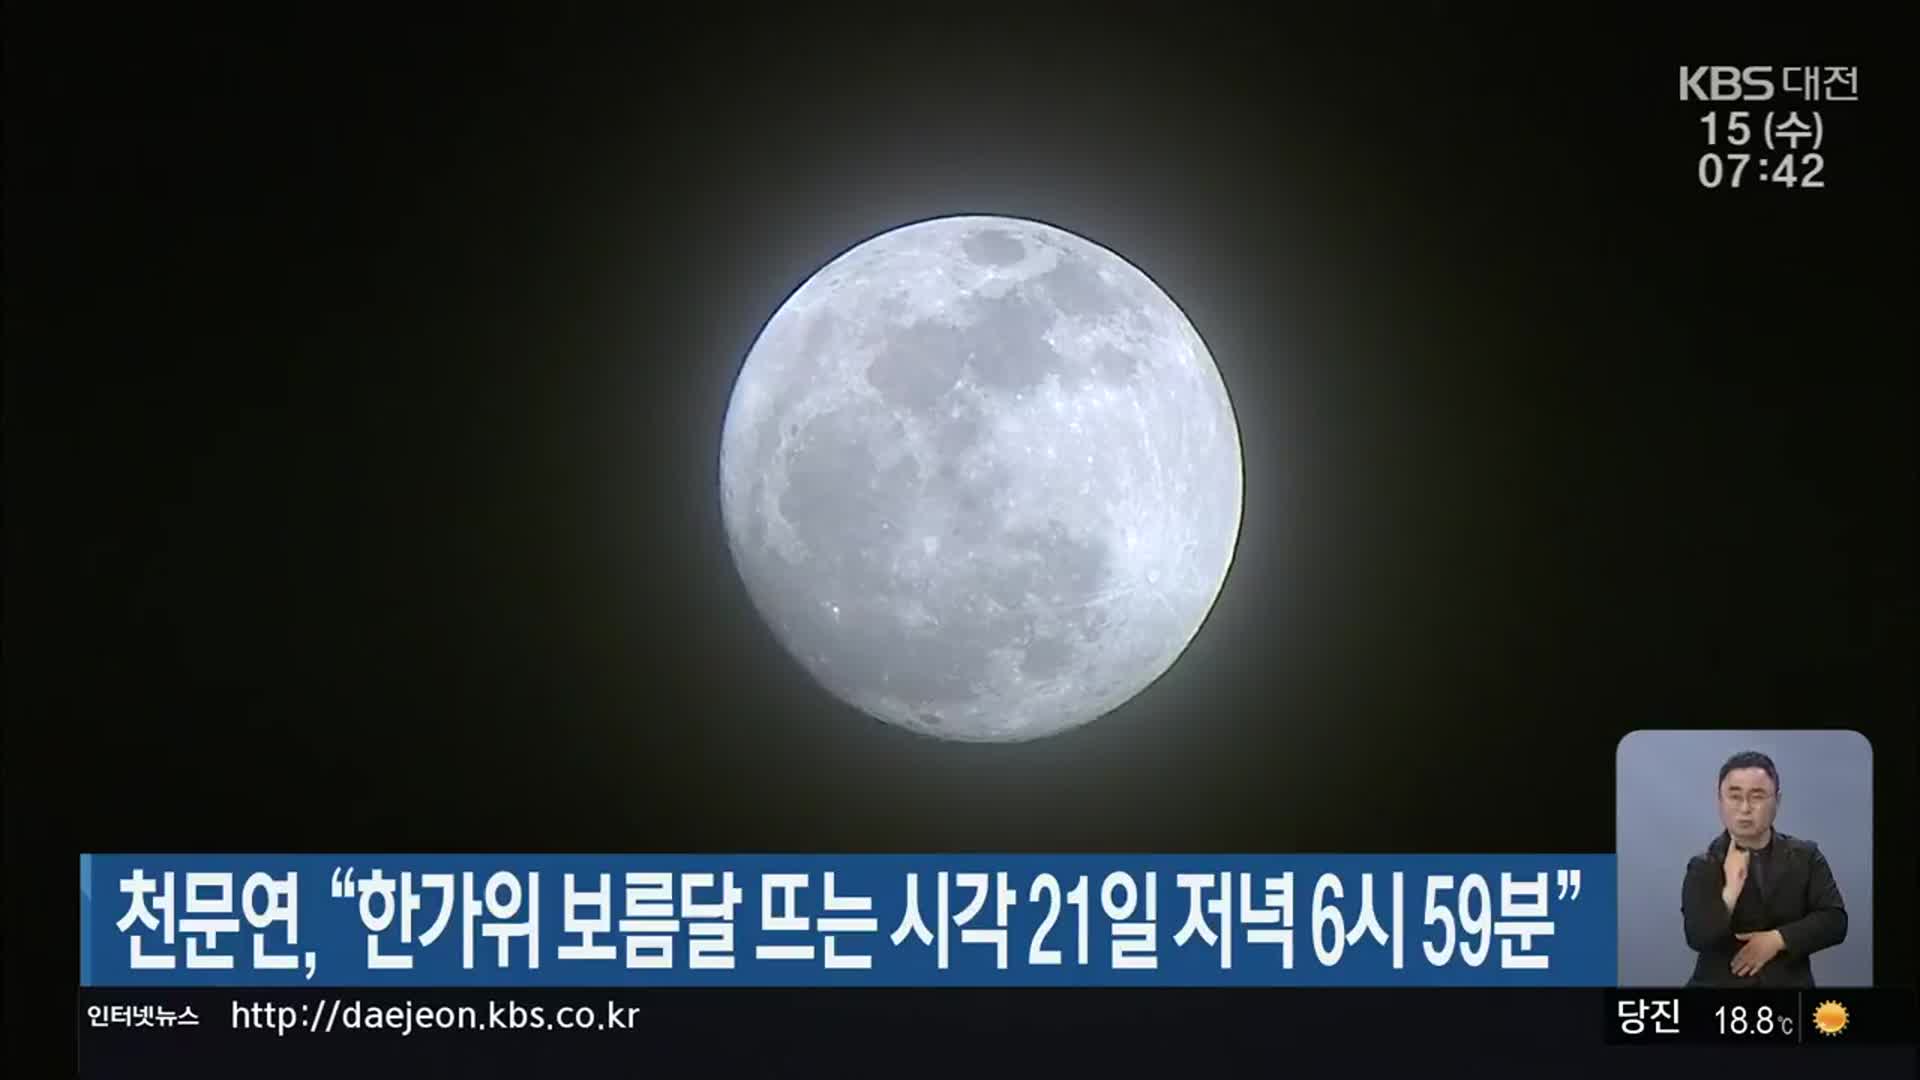 천문연 “한가위 보름달 뜨는 시각 21일 저녁 6시 59분”